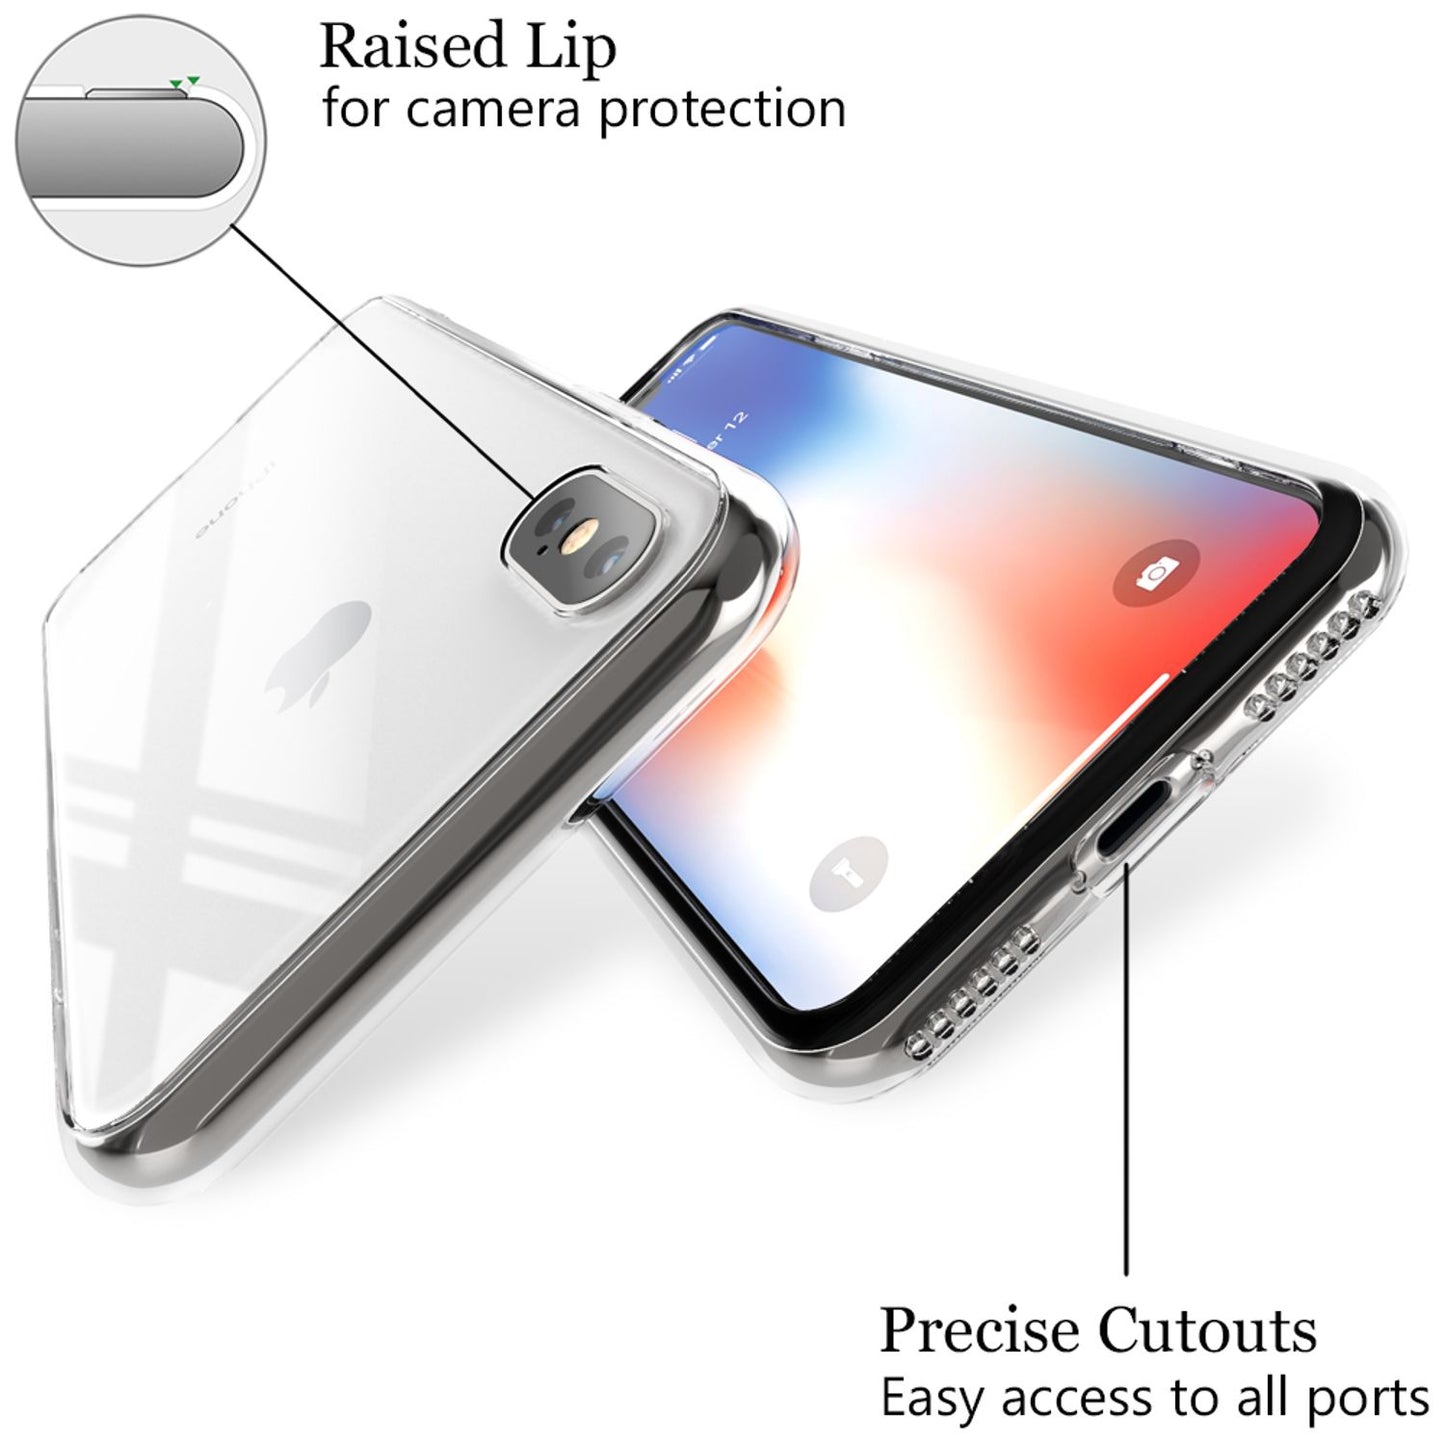 NALIA Hartglas Handy Hülle für iPhone X Xs, Schutz Case Cover Tasche Bumper Etui